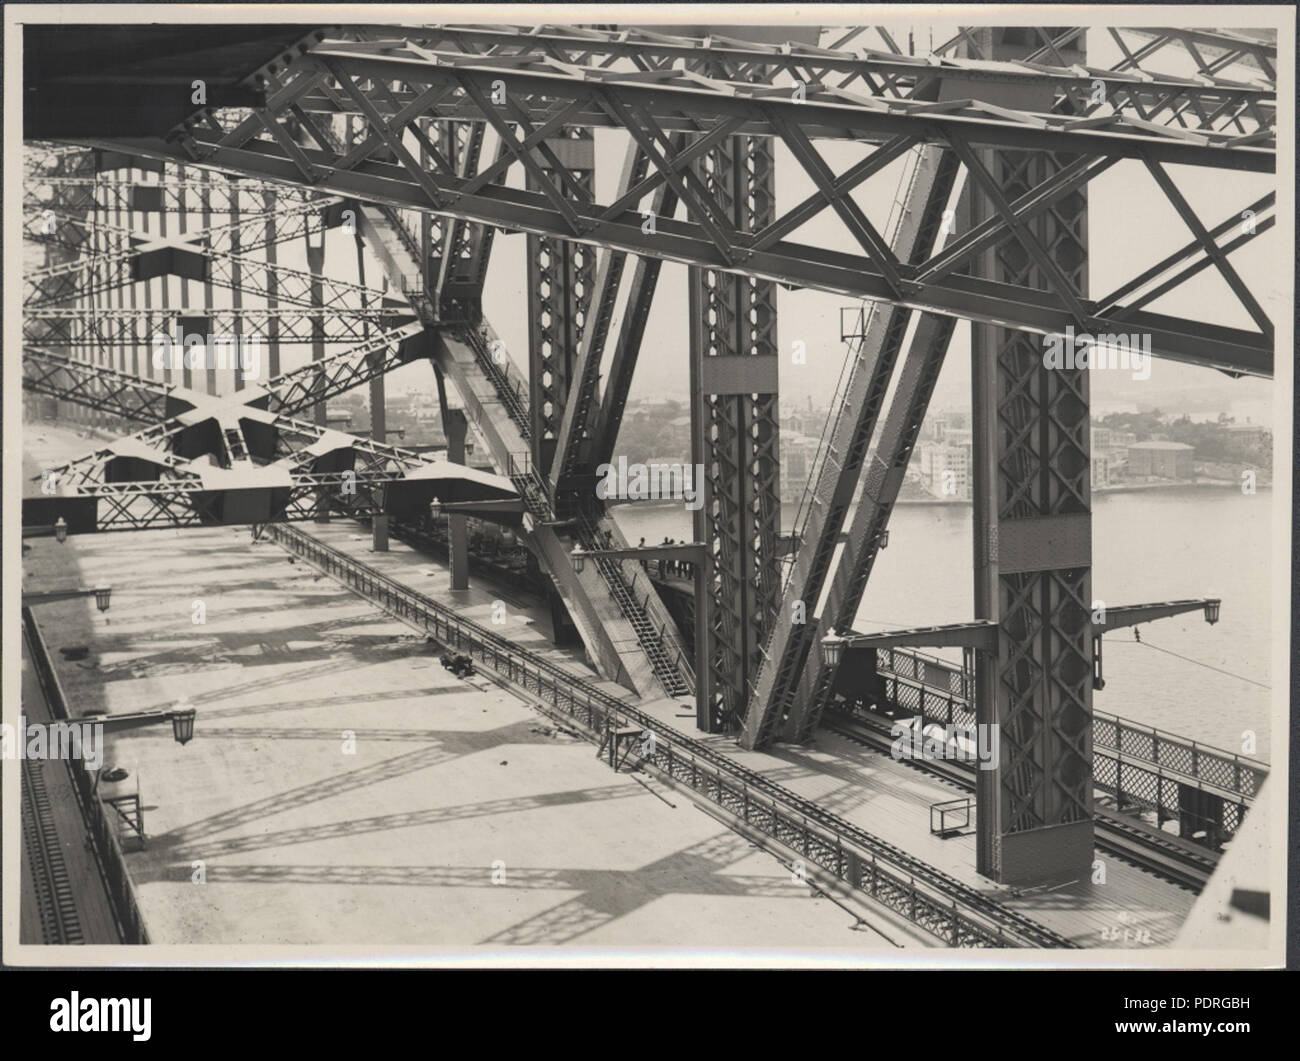 87/1353-127tirage photographique, vue de l'arche d'acier de l'Harbour Bridge, de l'argent / gélatine / papier, photographie de la Nouvelle Galles du sud Ministère des Travaux publics, Sydney, Australie, 97 janvier 1932, tirage photographique, 1932 (8283747116) Banque D'Images